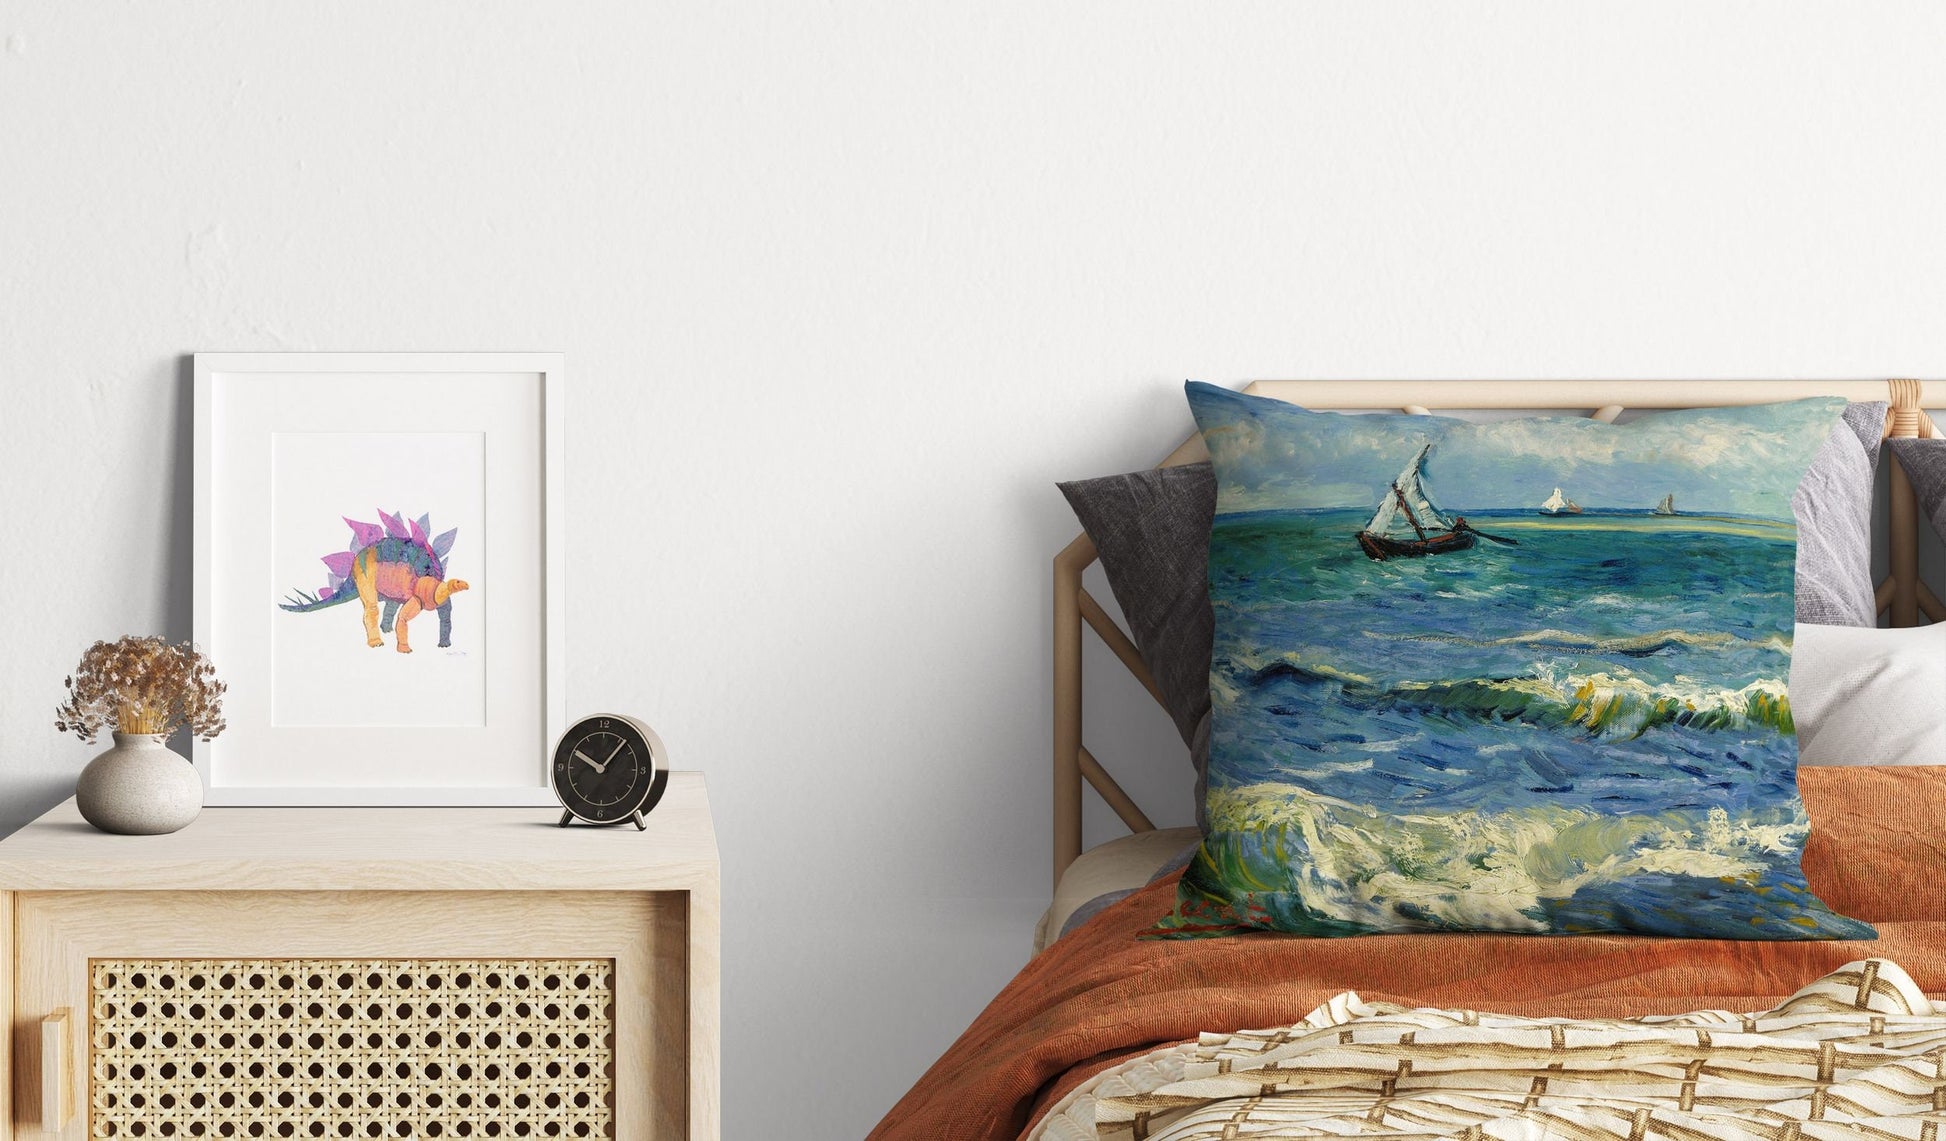 Vincent Van Gogh Seascape Near Les Saintes-Maries-De-La-Mer Famous Painting, Throw Pillow Cover, Abstract Throw Pillow Cover, Artist Pillow